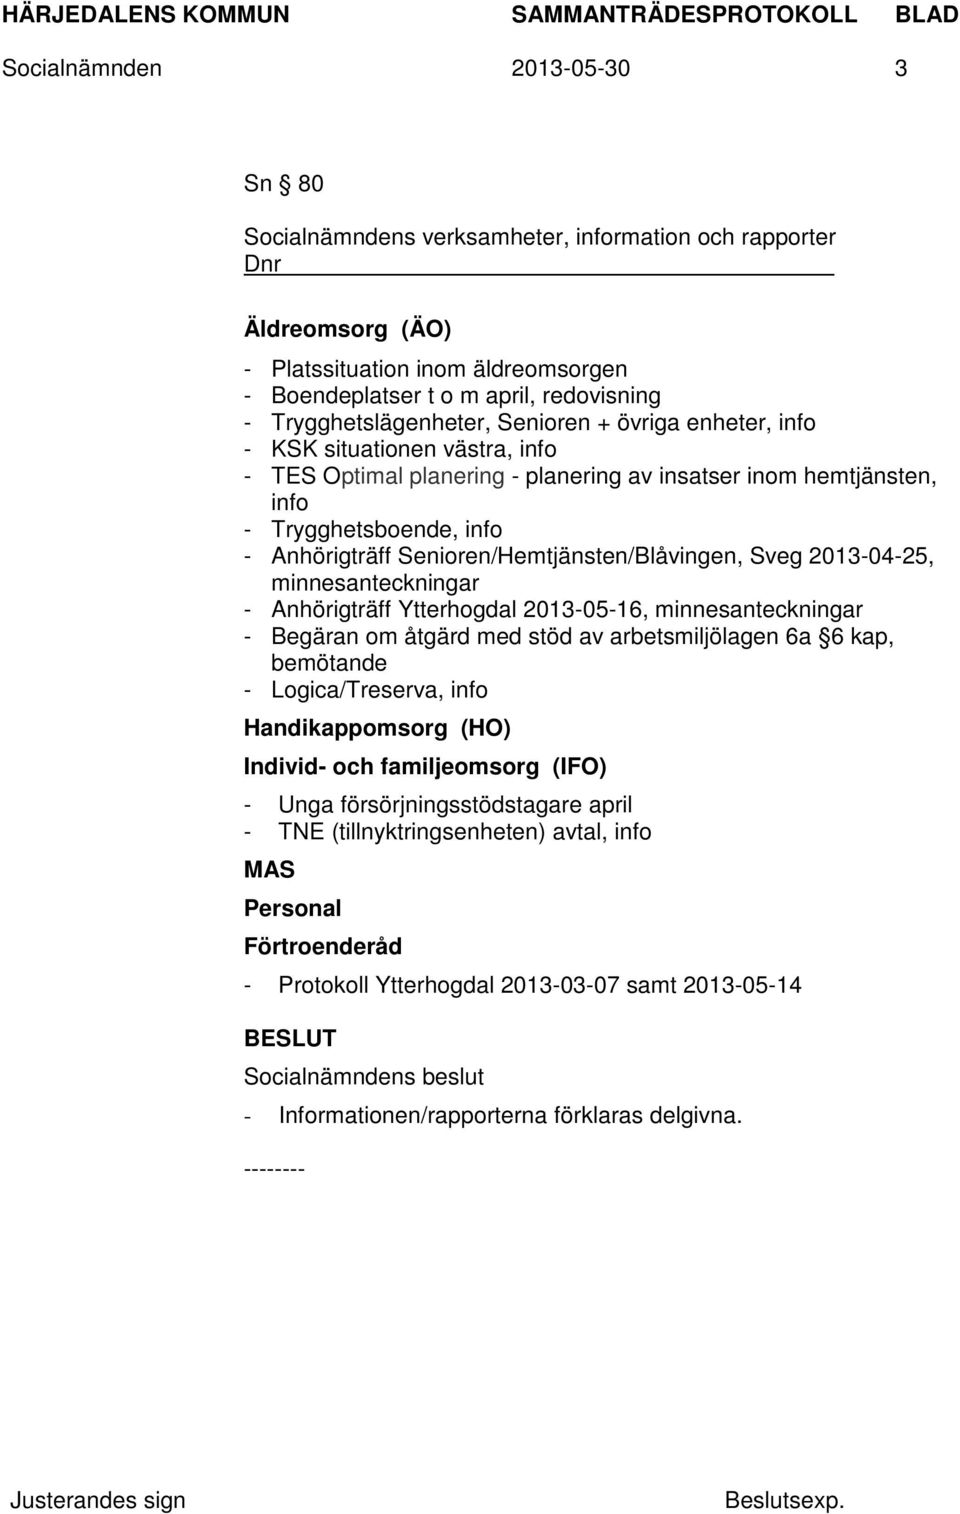 Senioren/Hemtjänsten/Blåvingen, Sveg 2013-04-25, minnesanteckningar - Anhörigträff Ytterhogdal 2013-05-16, minnesanteckningar - Begäran om åtgärd med stöd av arbetsmiljölagen 6a 6 kap, bemötande -